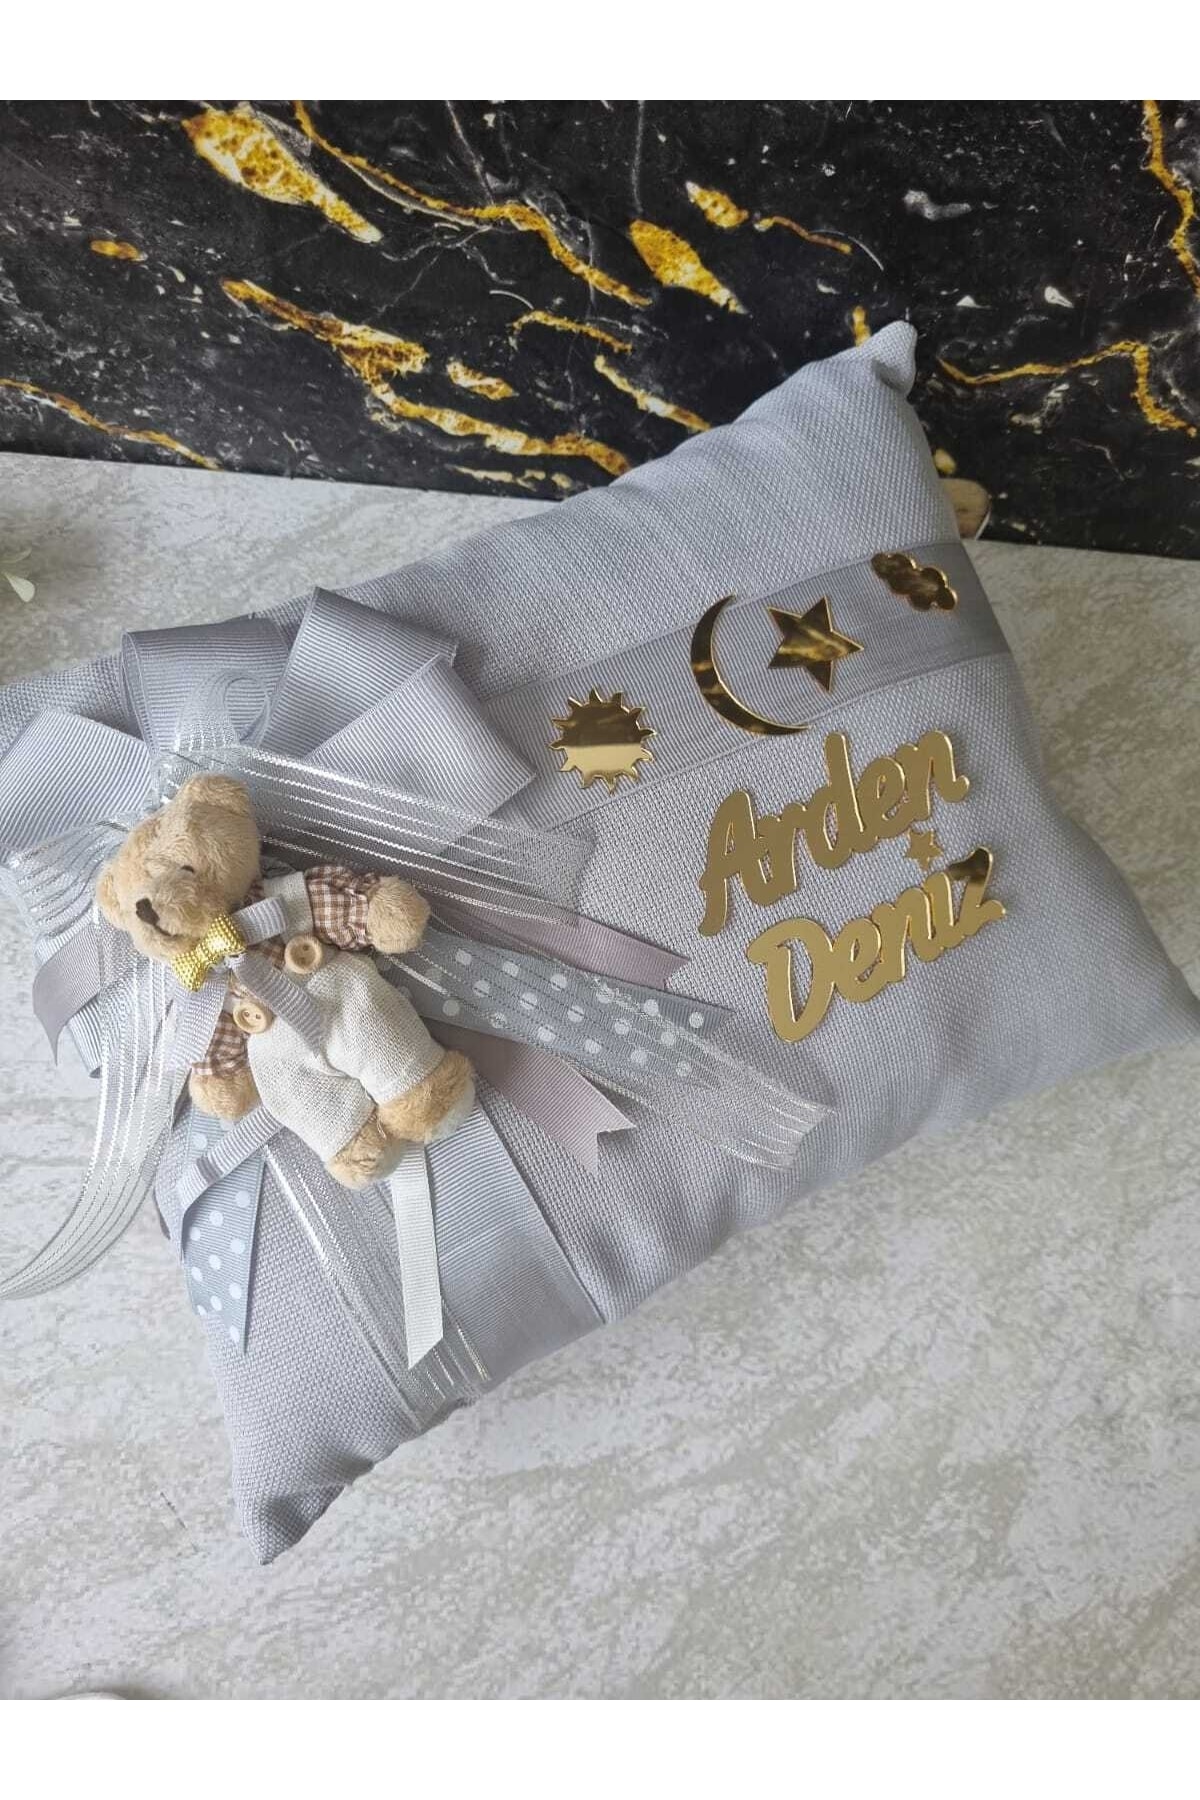 Bebek Çikolatası Lüks Bebek Yastığı, Pleksi (aynalı) Isimli Bebek Yastığı